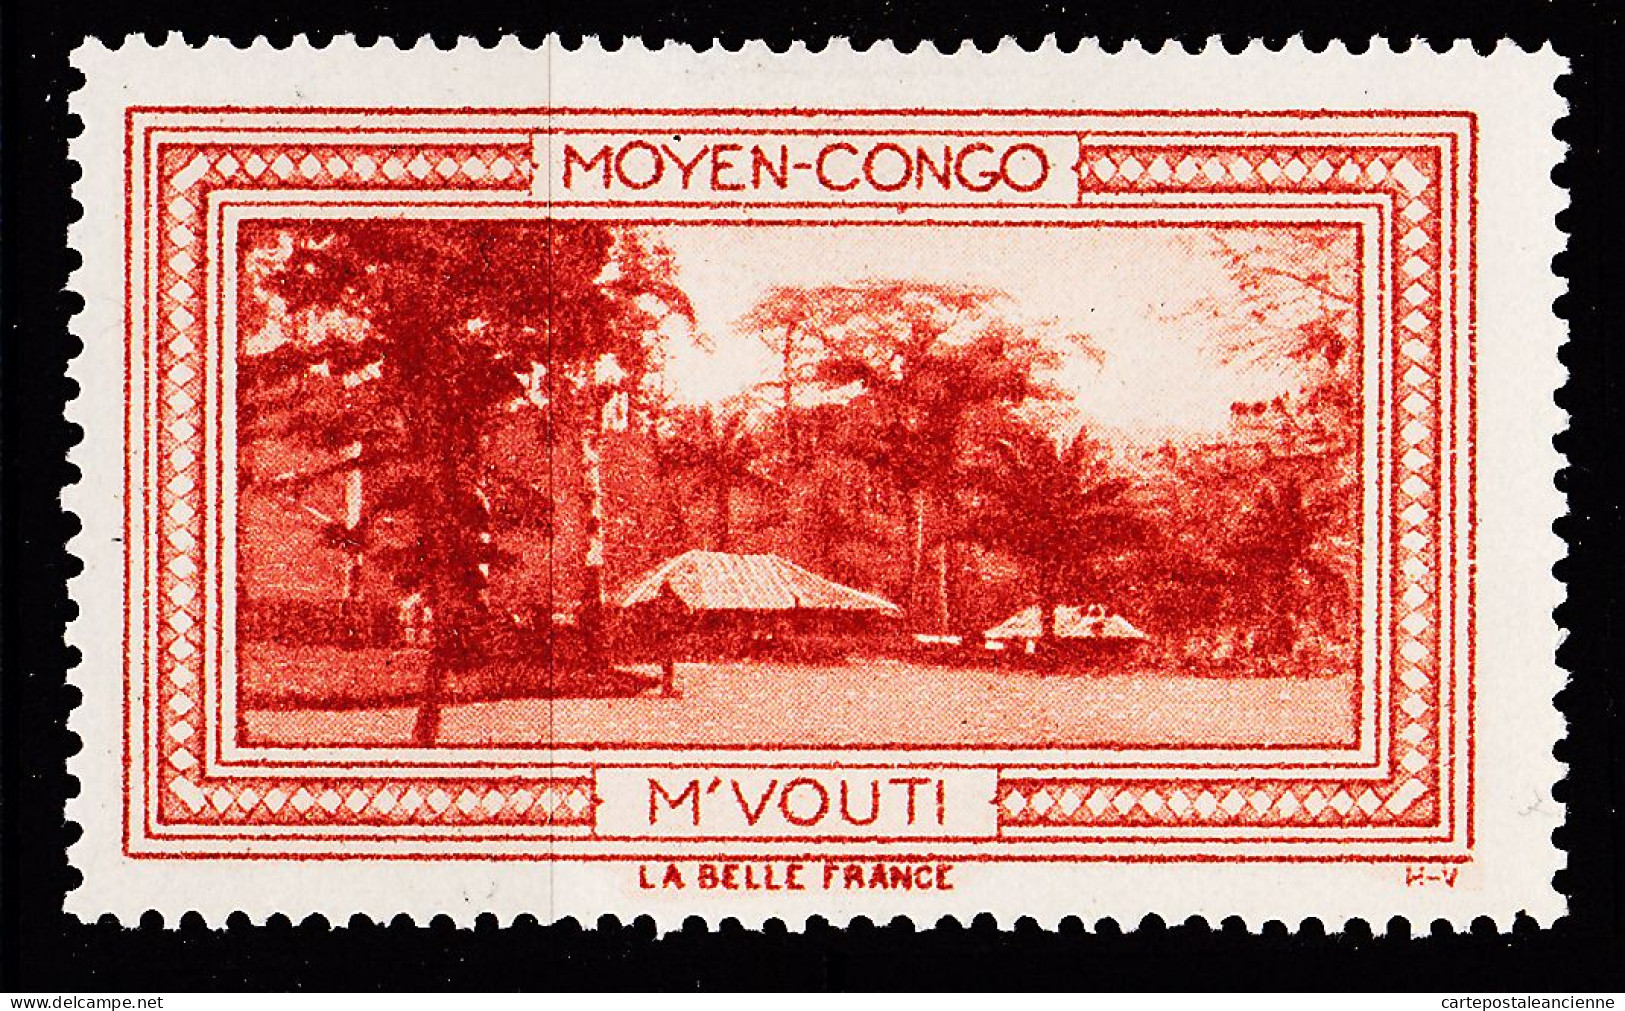 12971 ● M'VOUTI MOYEN-CONGO Vignette De Collection LA BELLE FRANCE 1925s H-V Erinnophilie - Tourism (Labels)